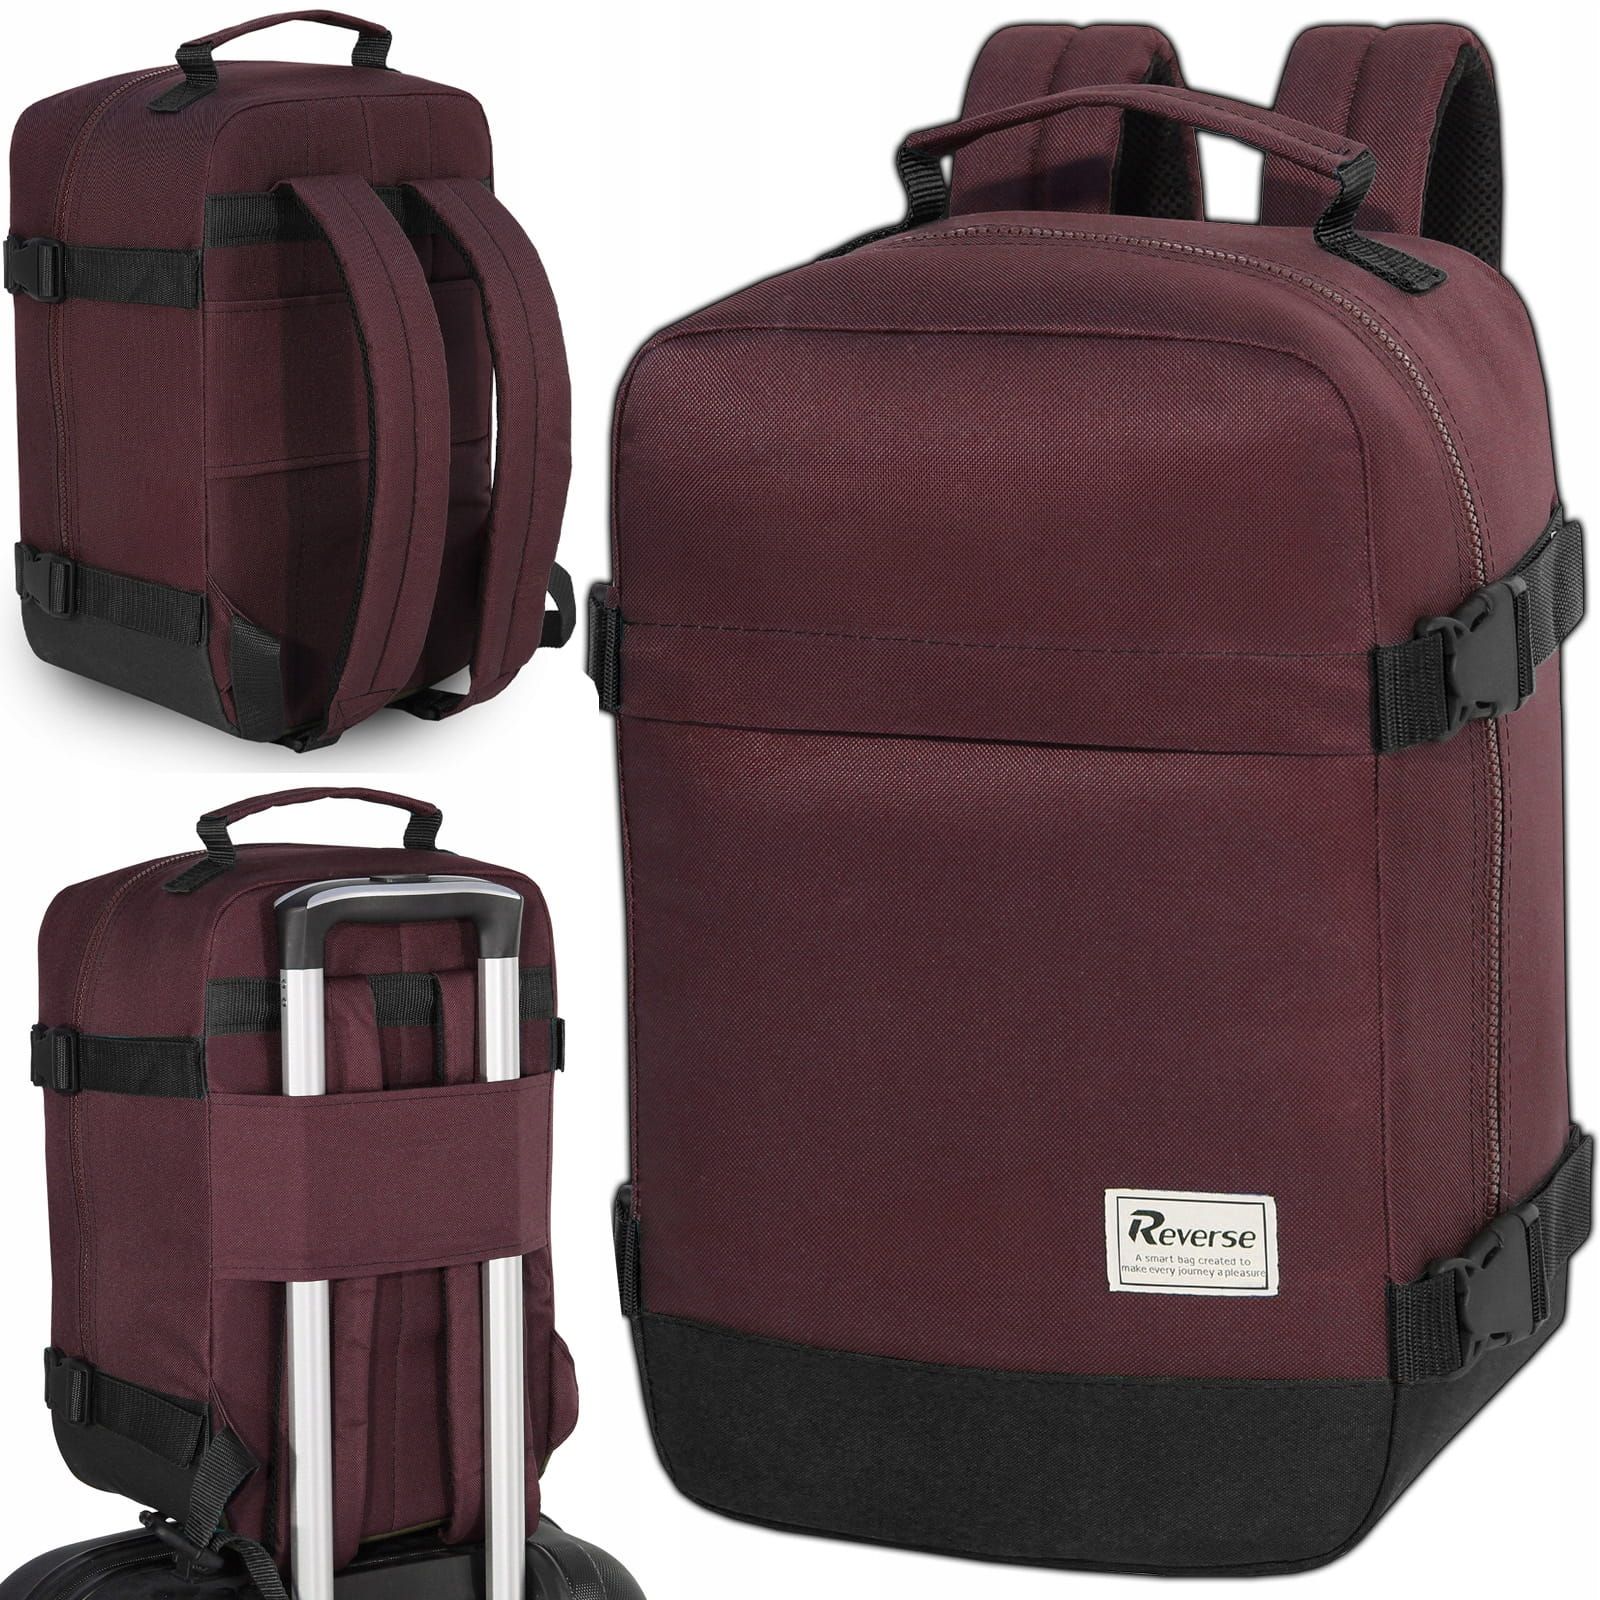 Reverse Příruční zavazadlo - batoh pro RYANAIR 2069 40x25x20 VINE